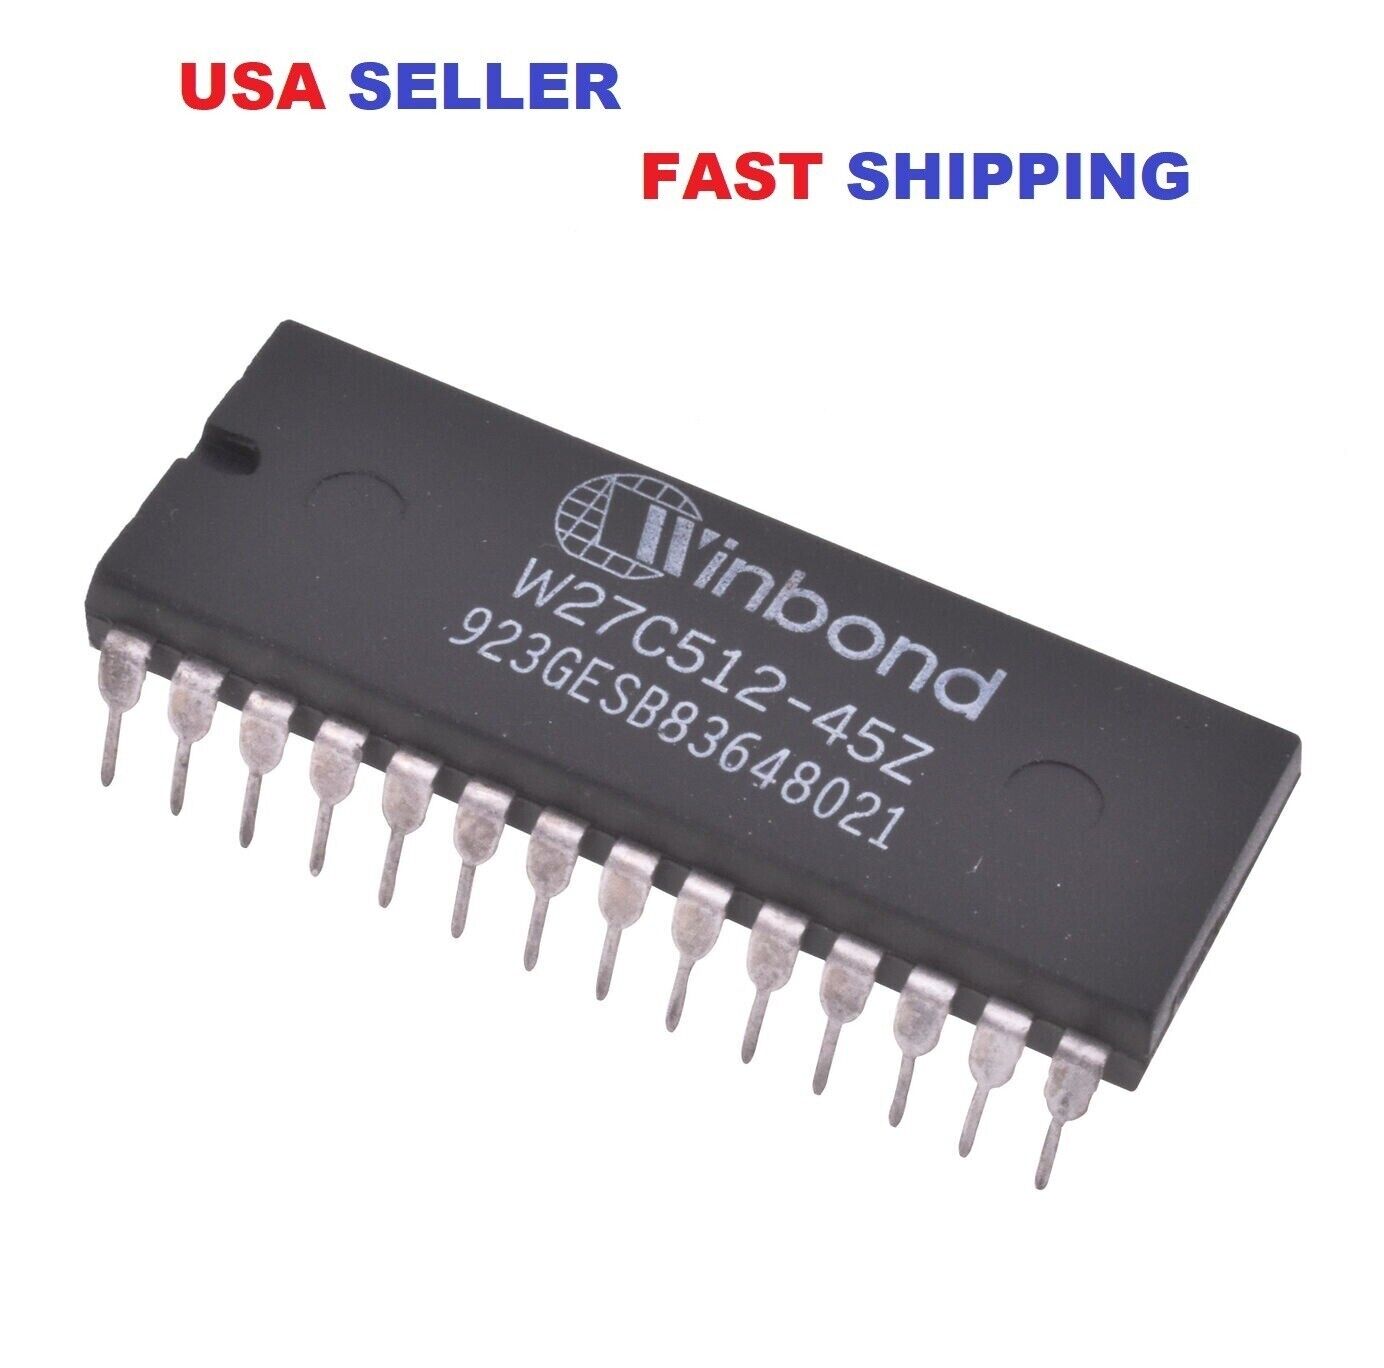 1 x W27C512-45Z WINBOND DIP-28 IC EEPROM 512KBIT USA